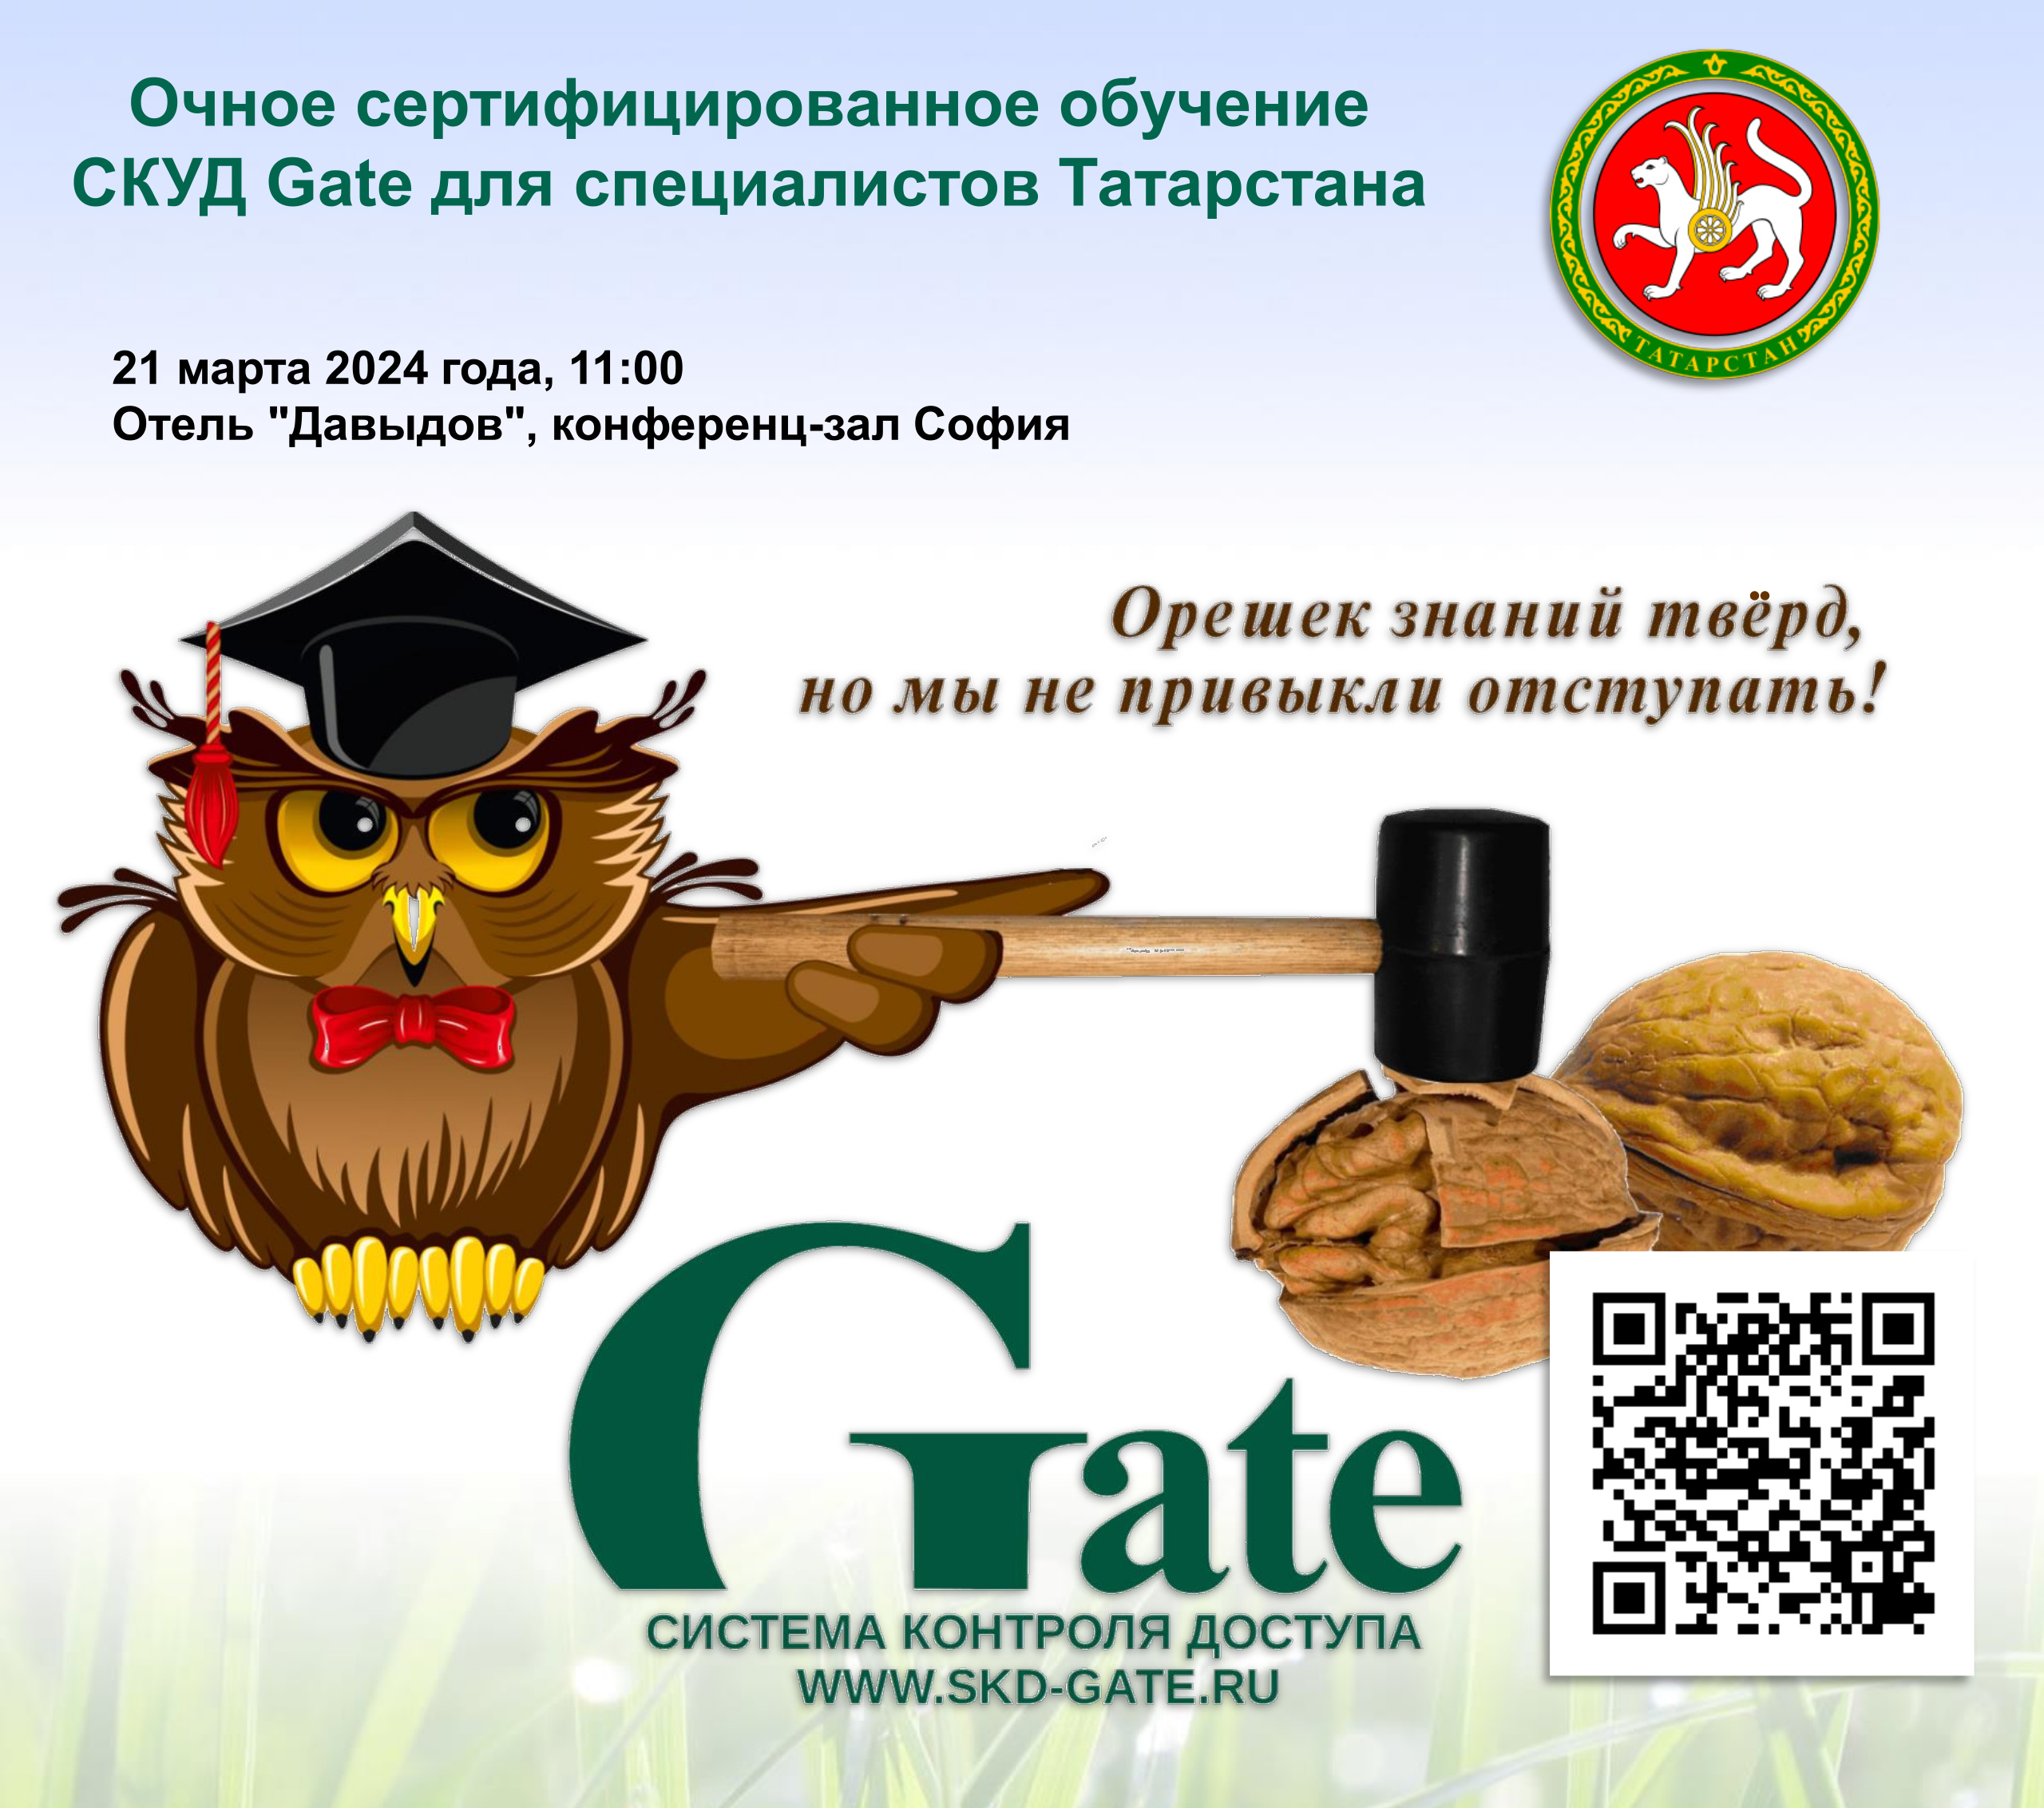 Очное сертифицированное обучение СКУД Gate для специалистов Татарстана